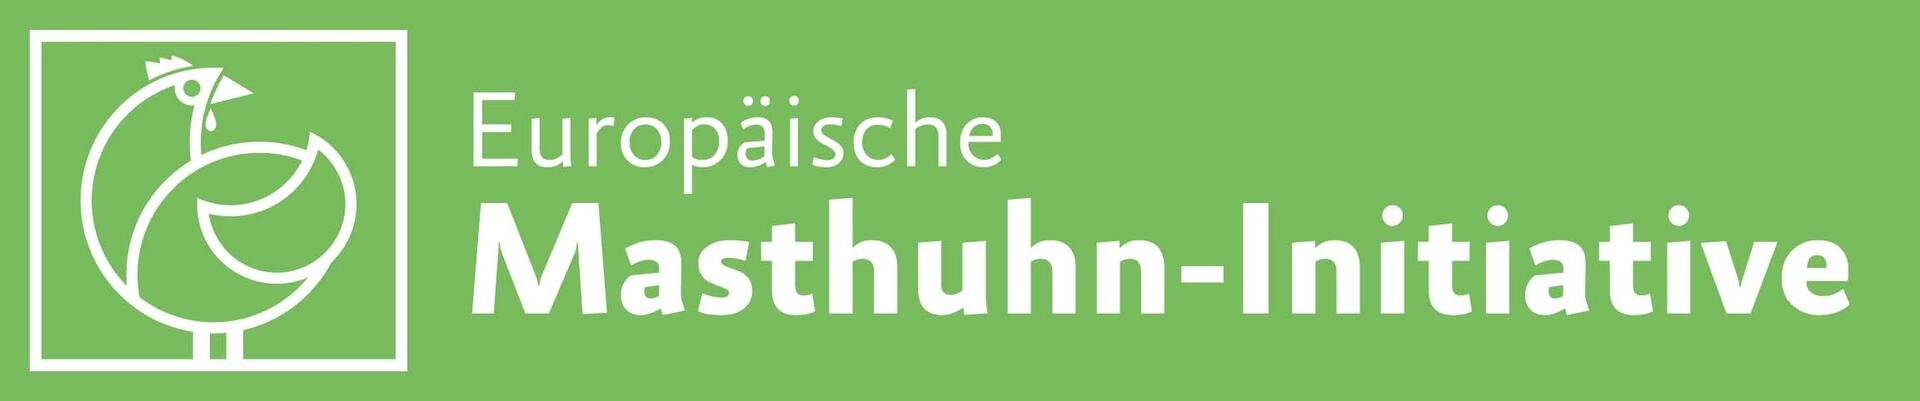 Logo Masthuhn-Initiative